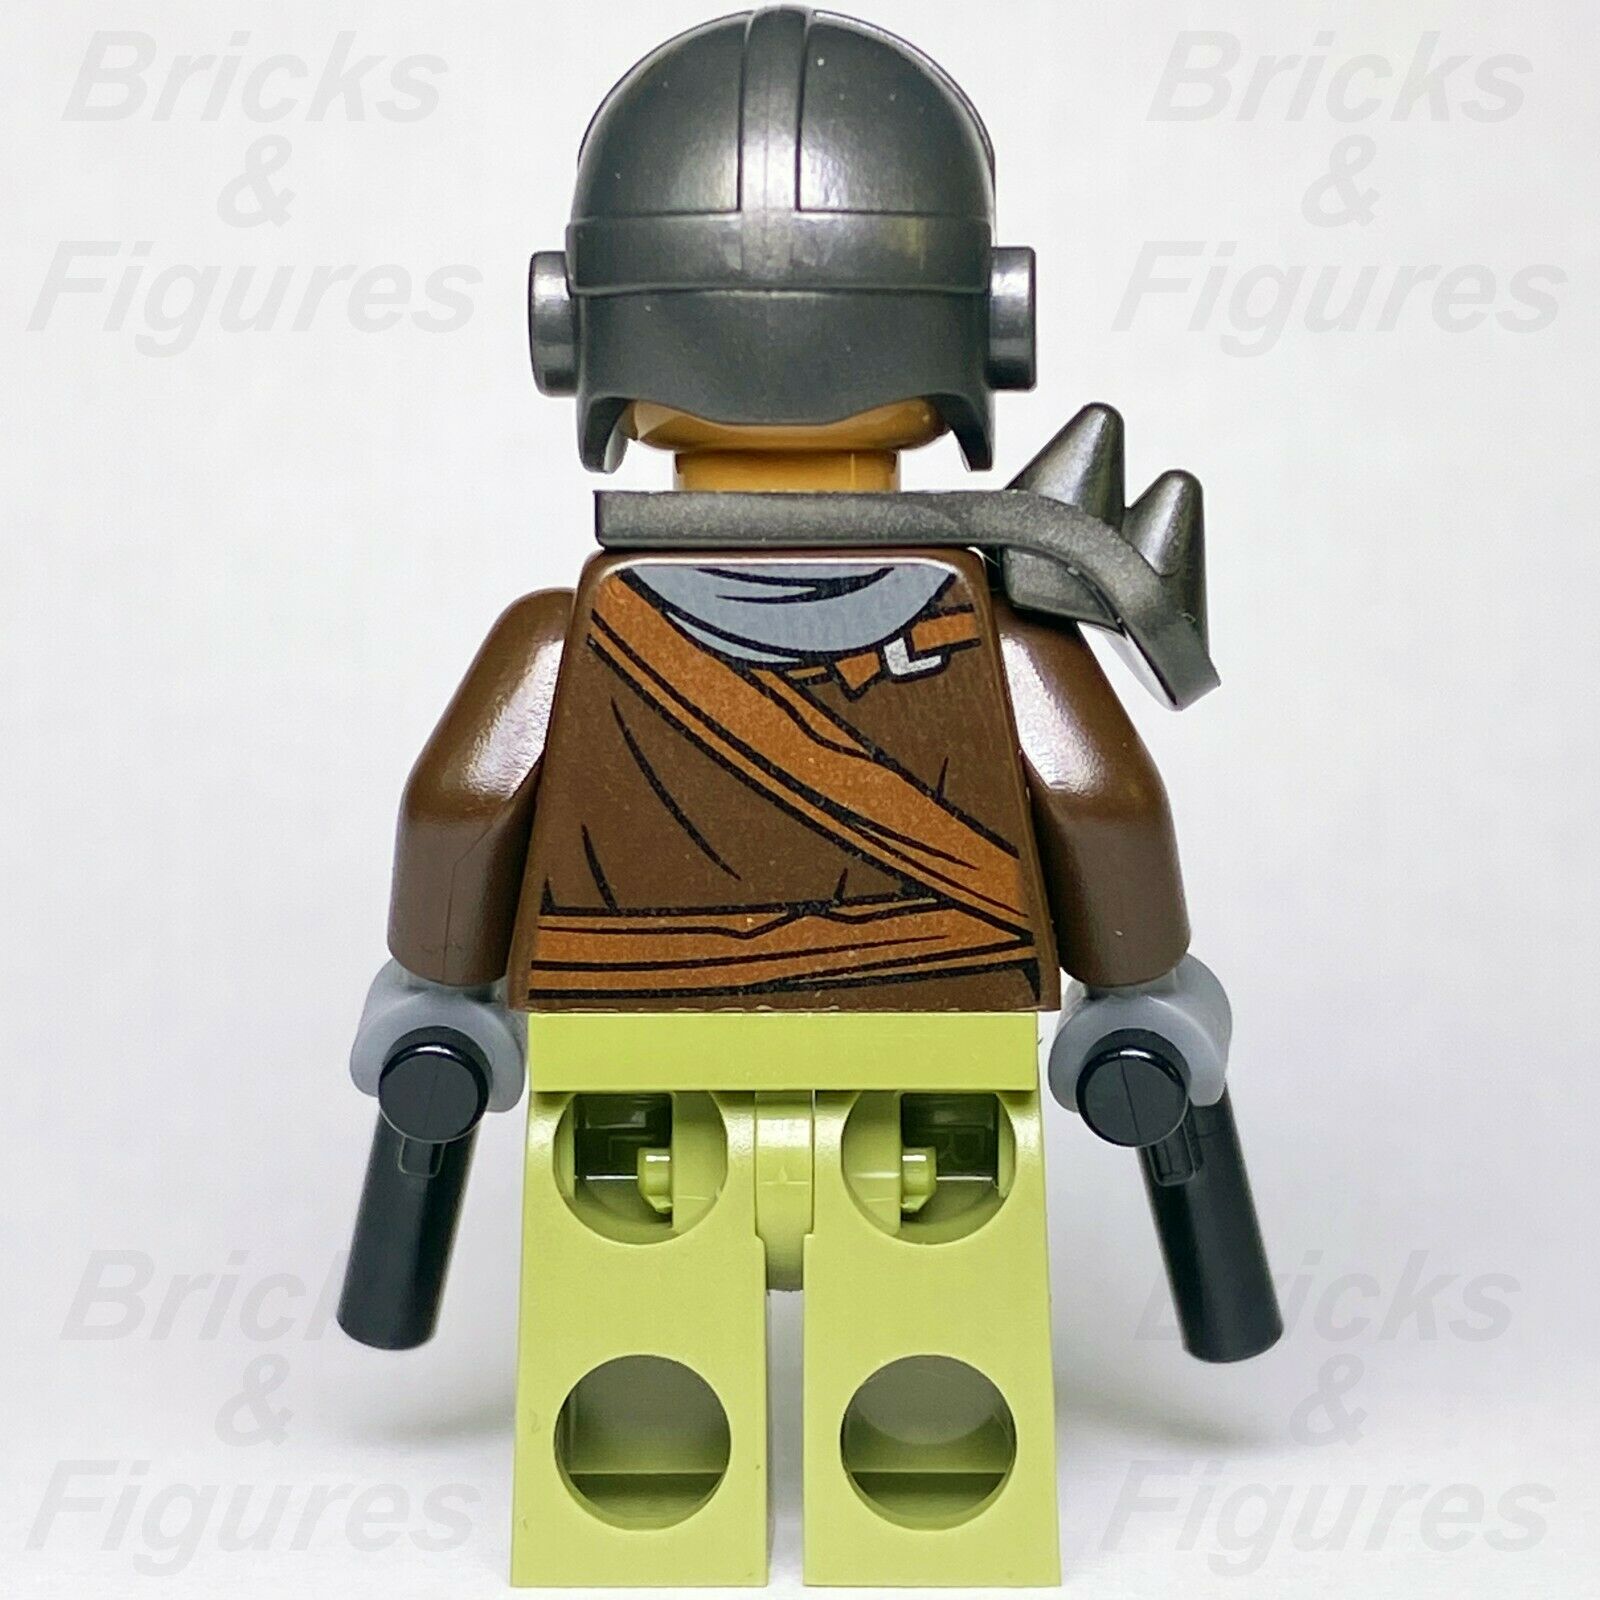 Star Wars LEGO Klatooinian Raider with Helmet The Mandalorian Minifigure 75254 - Bricks & Figures